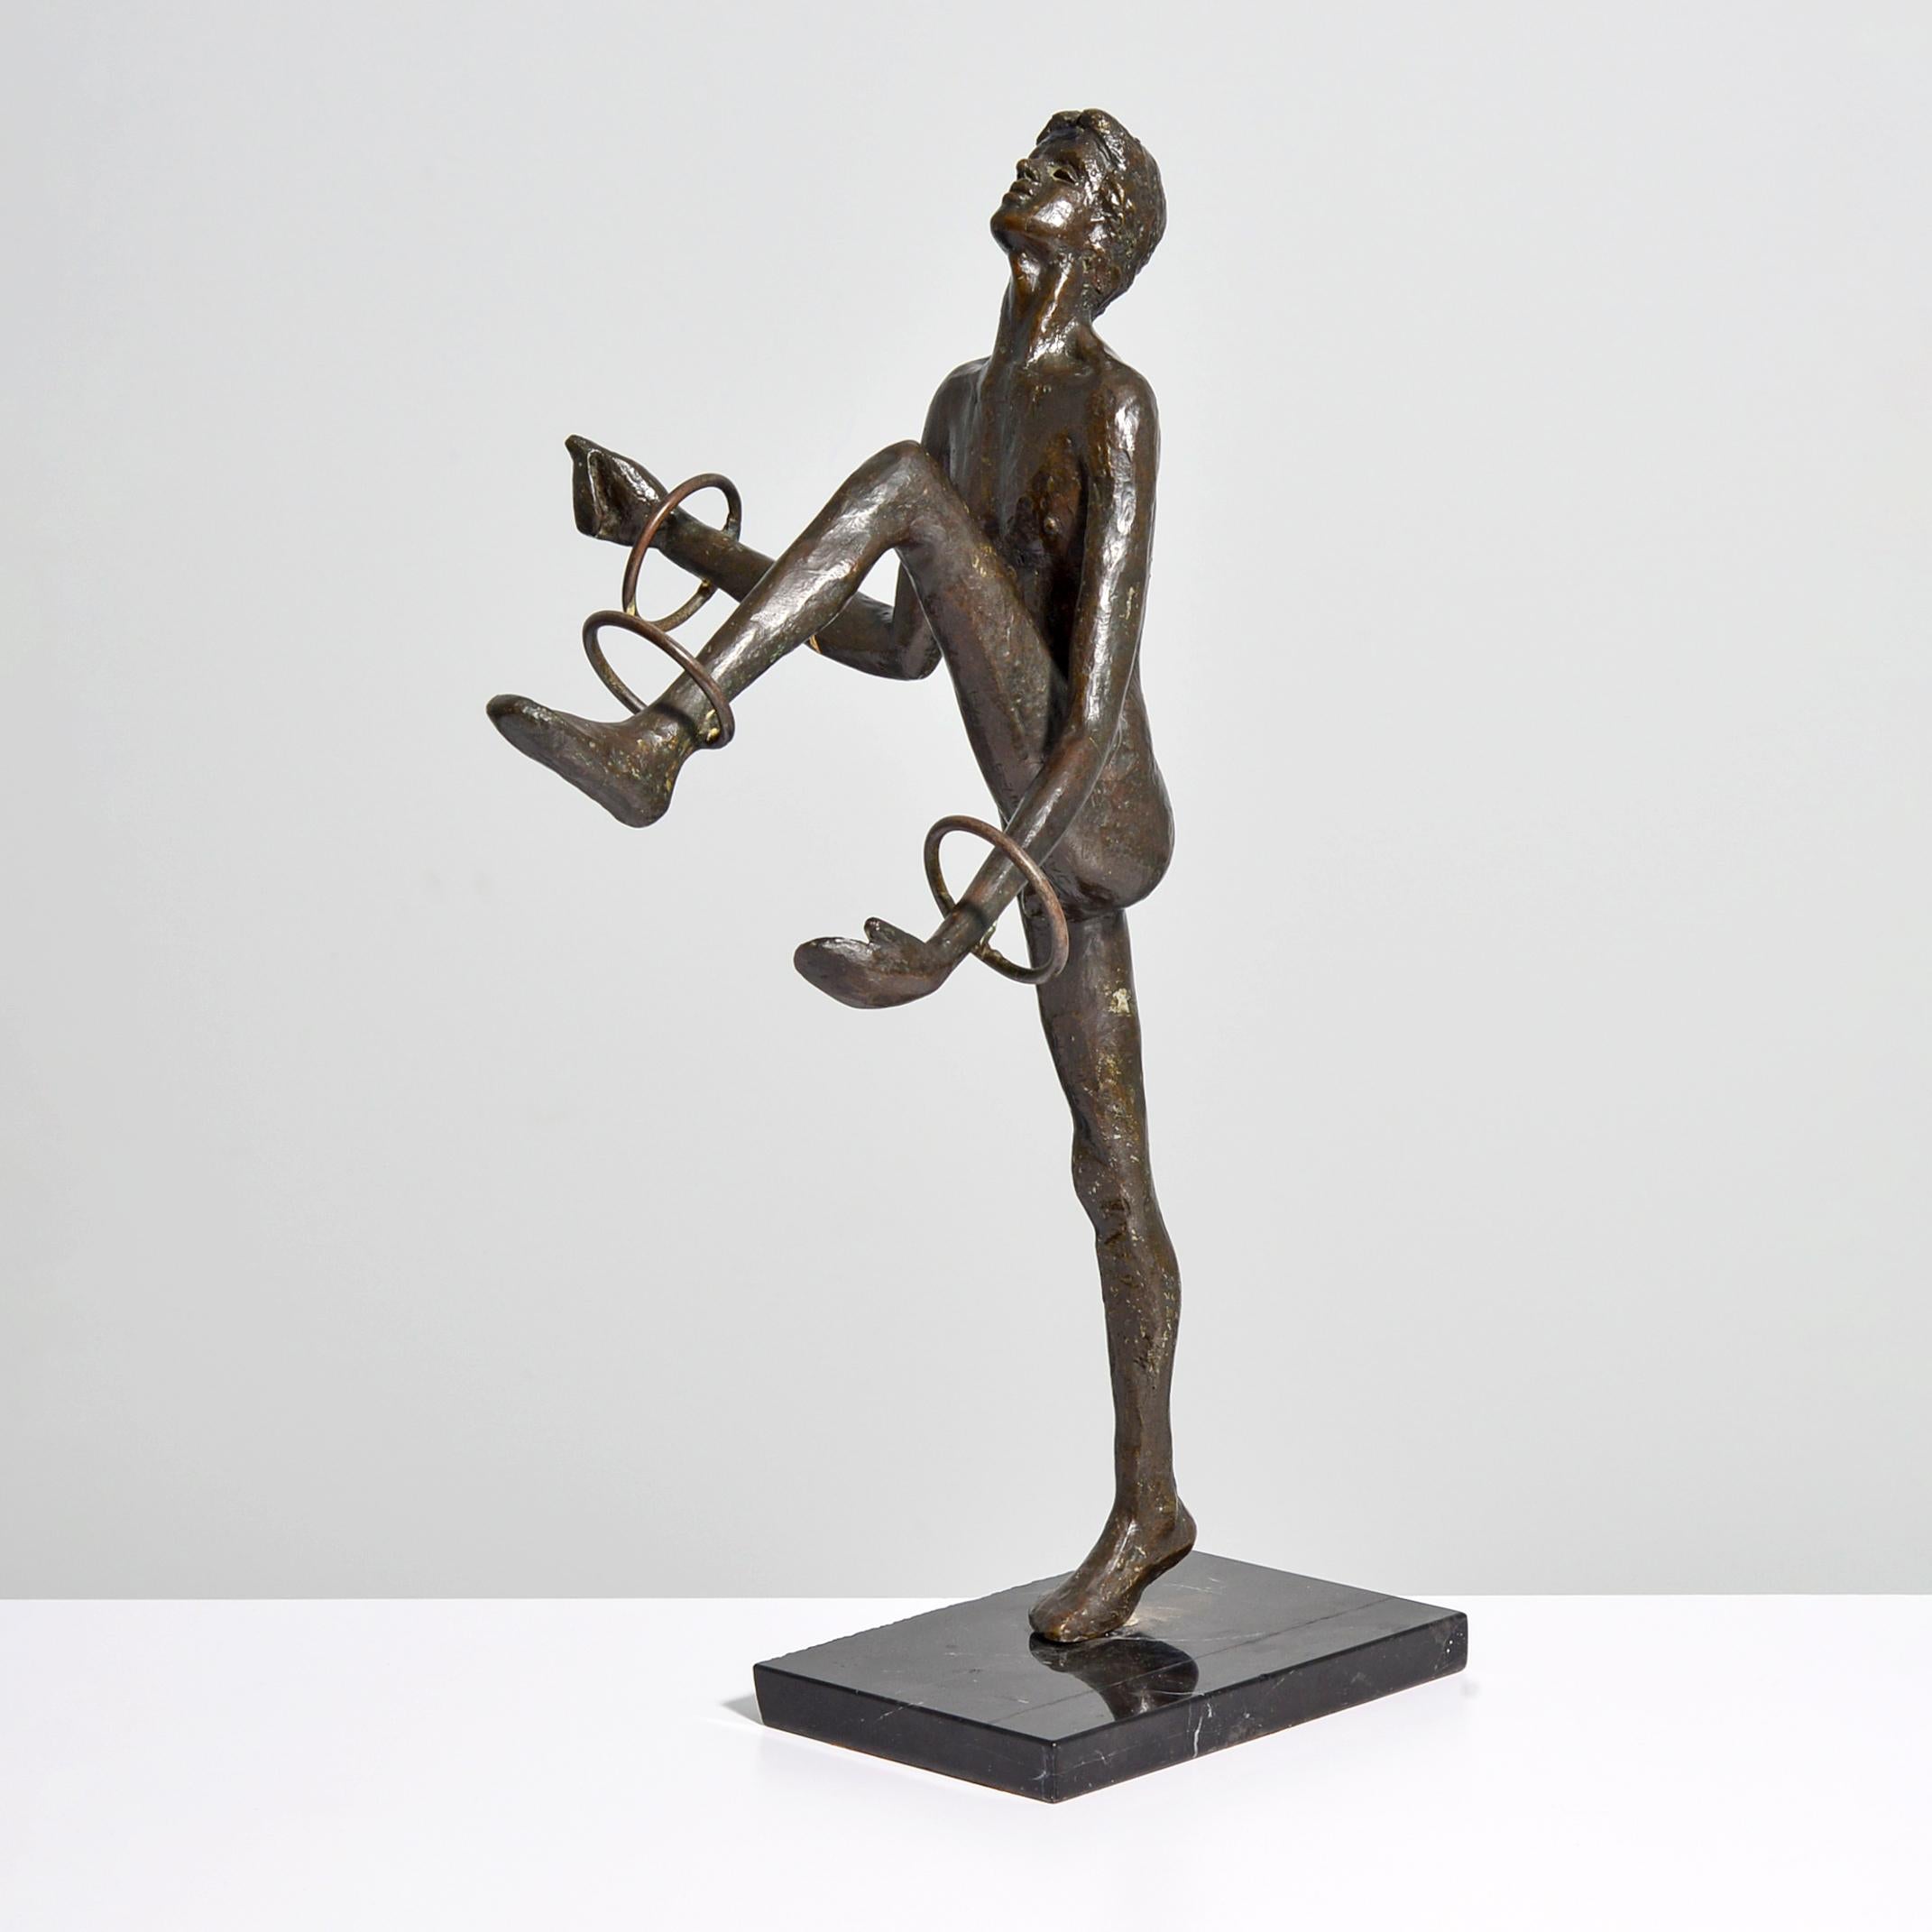 Victor Salmones “Juggler” Bronze Sculpture